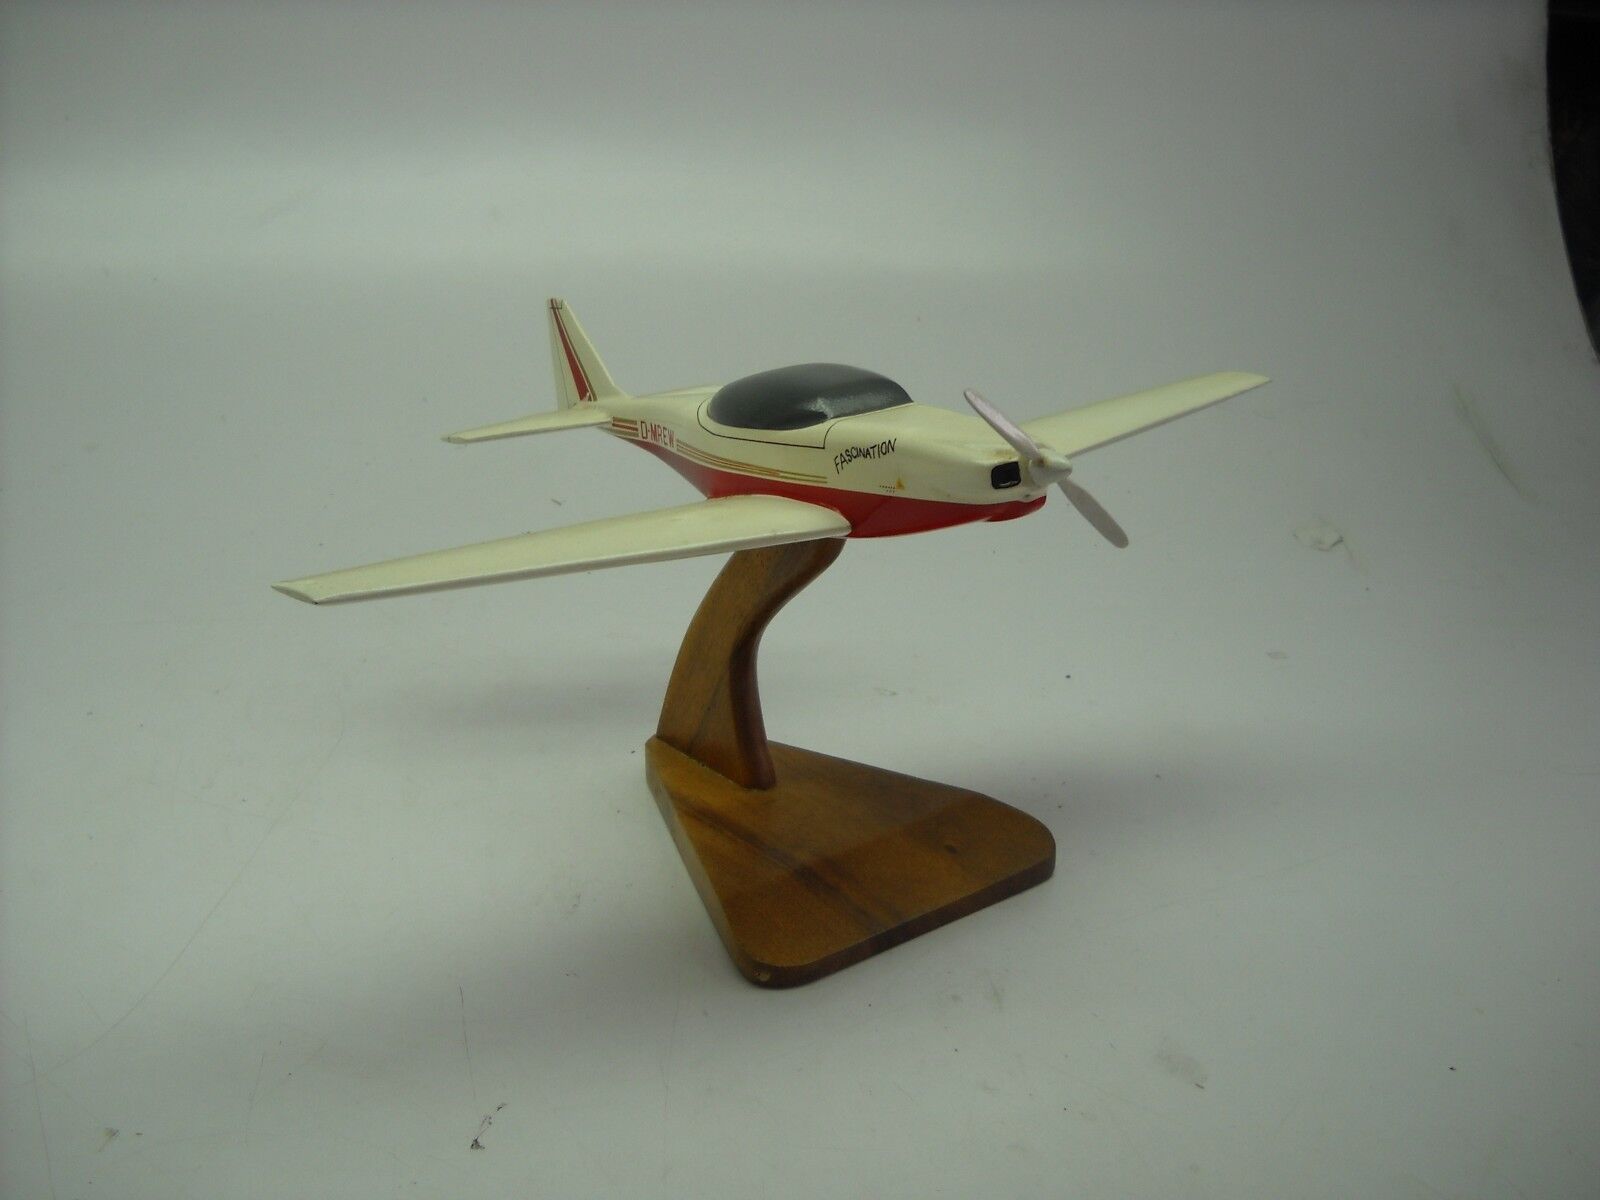 Dallach Fascination Private Airplane Wood Model Replica Small 